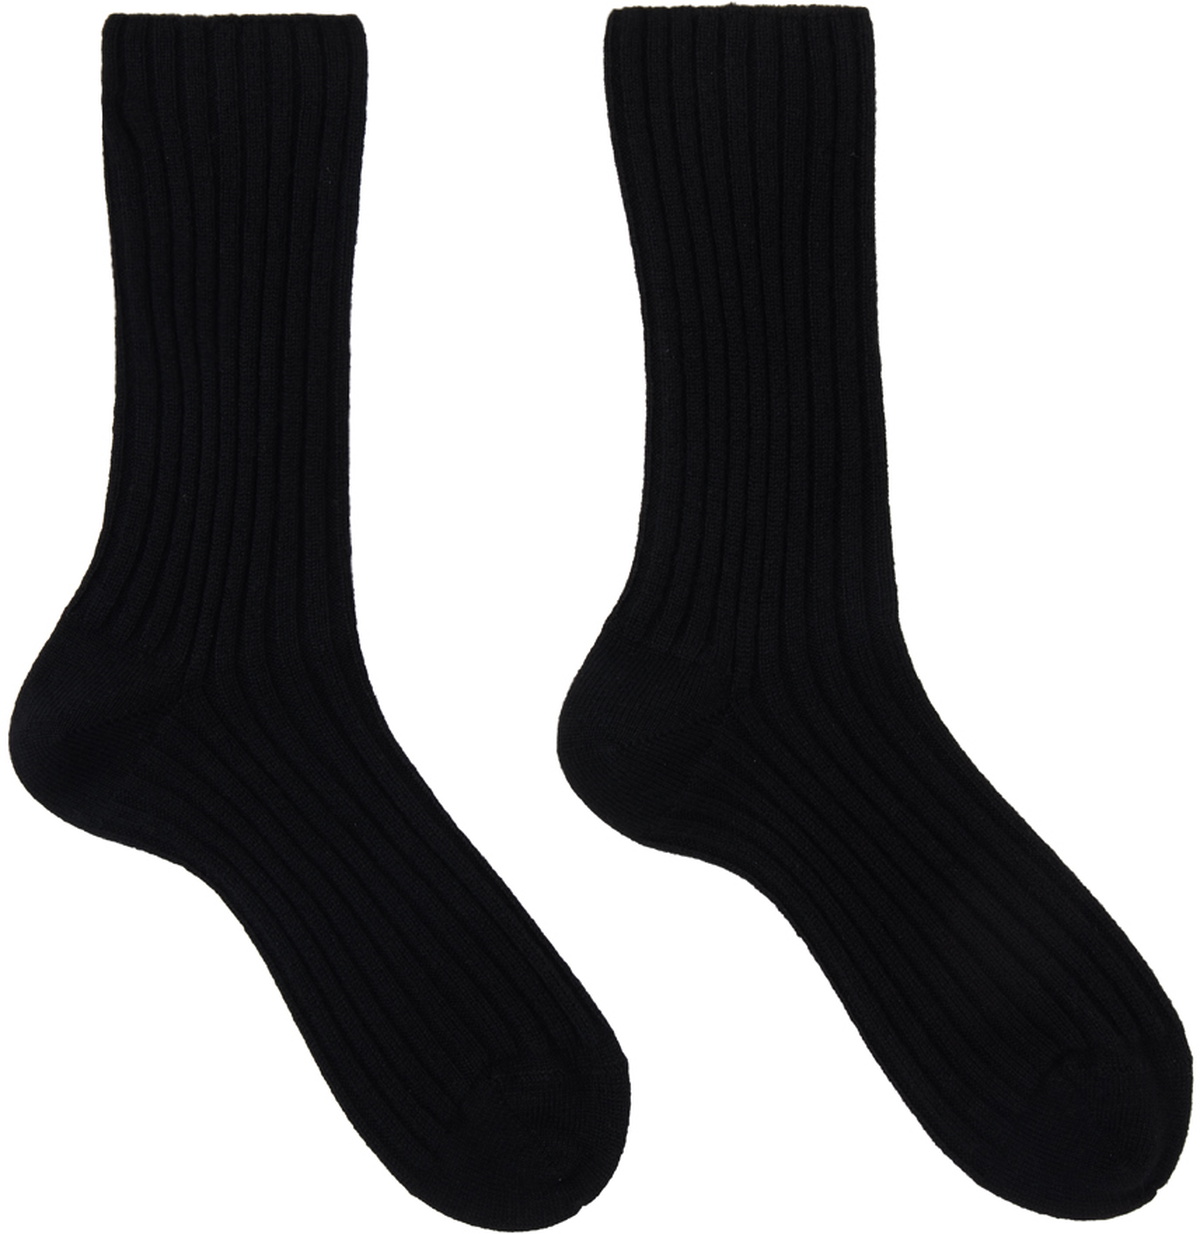 The Row Black Calf Socks The Row